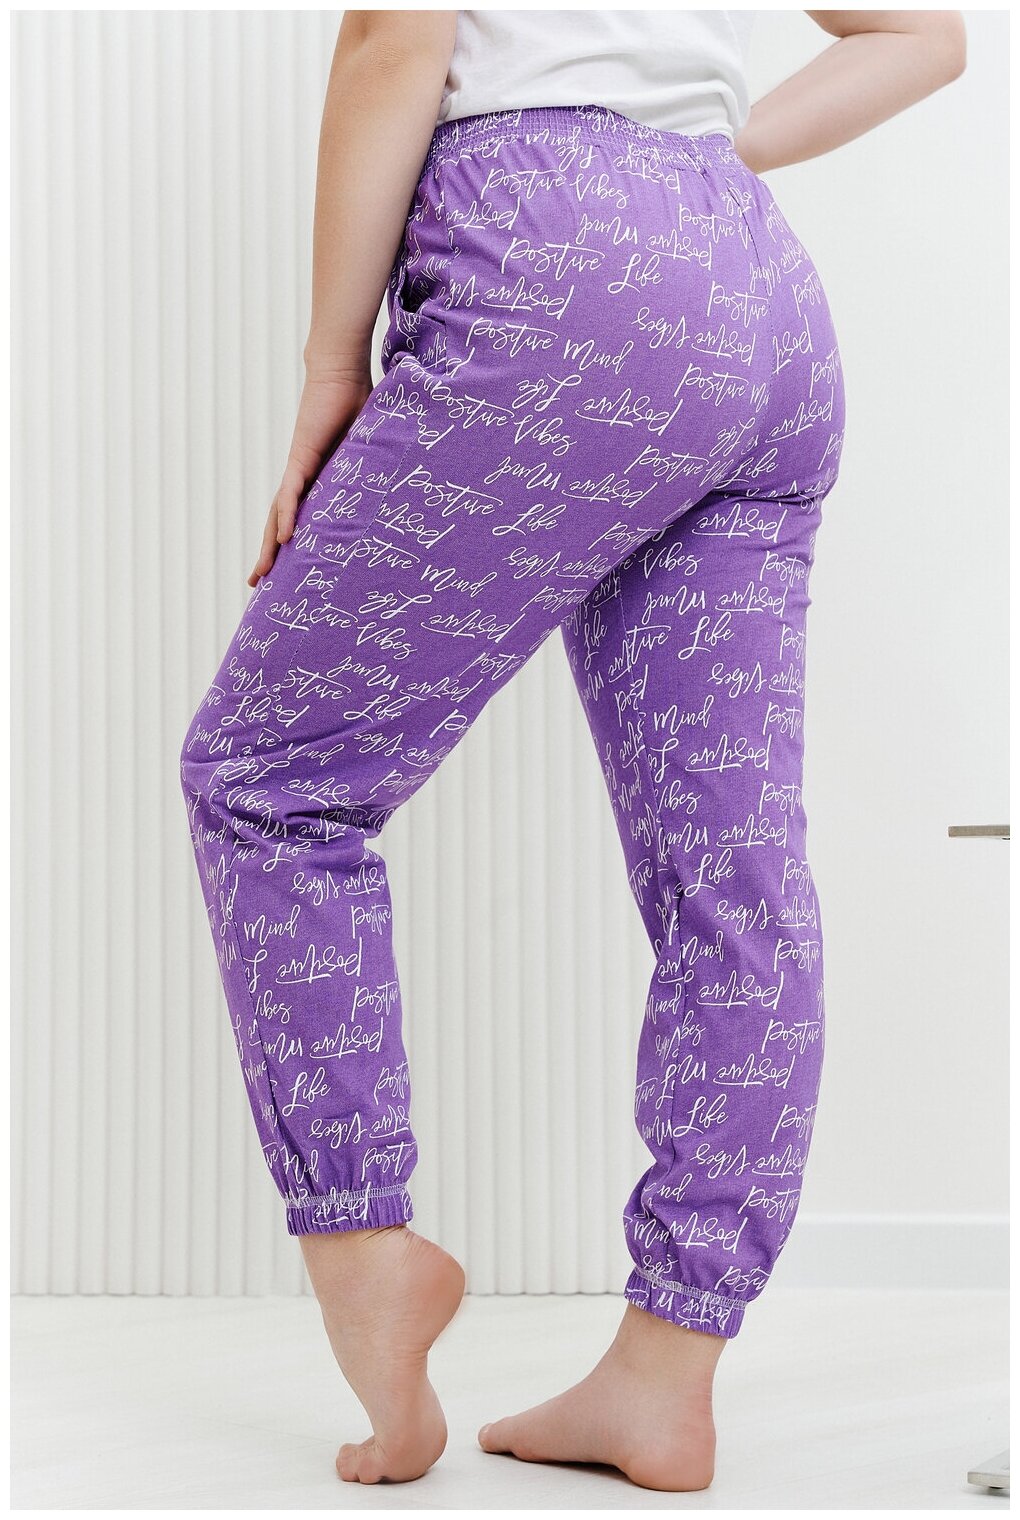 Брюки Натали, без рукава, пояс на резинке, карманы, размер 54, фиолетовый - фотография № 3